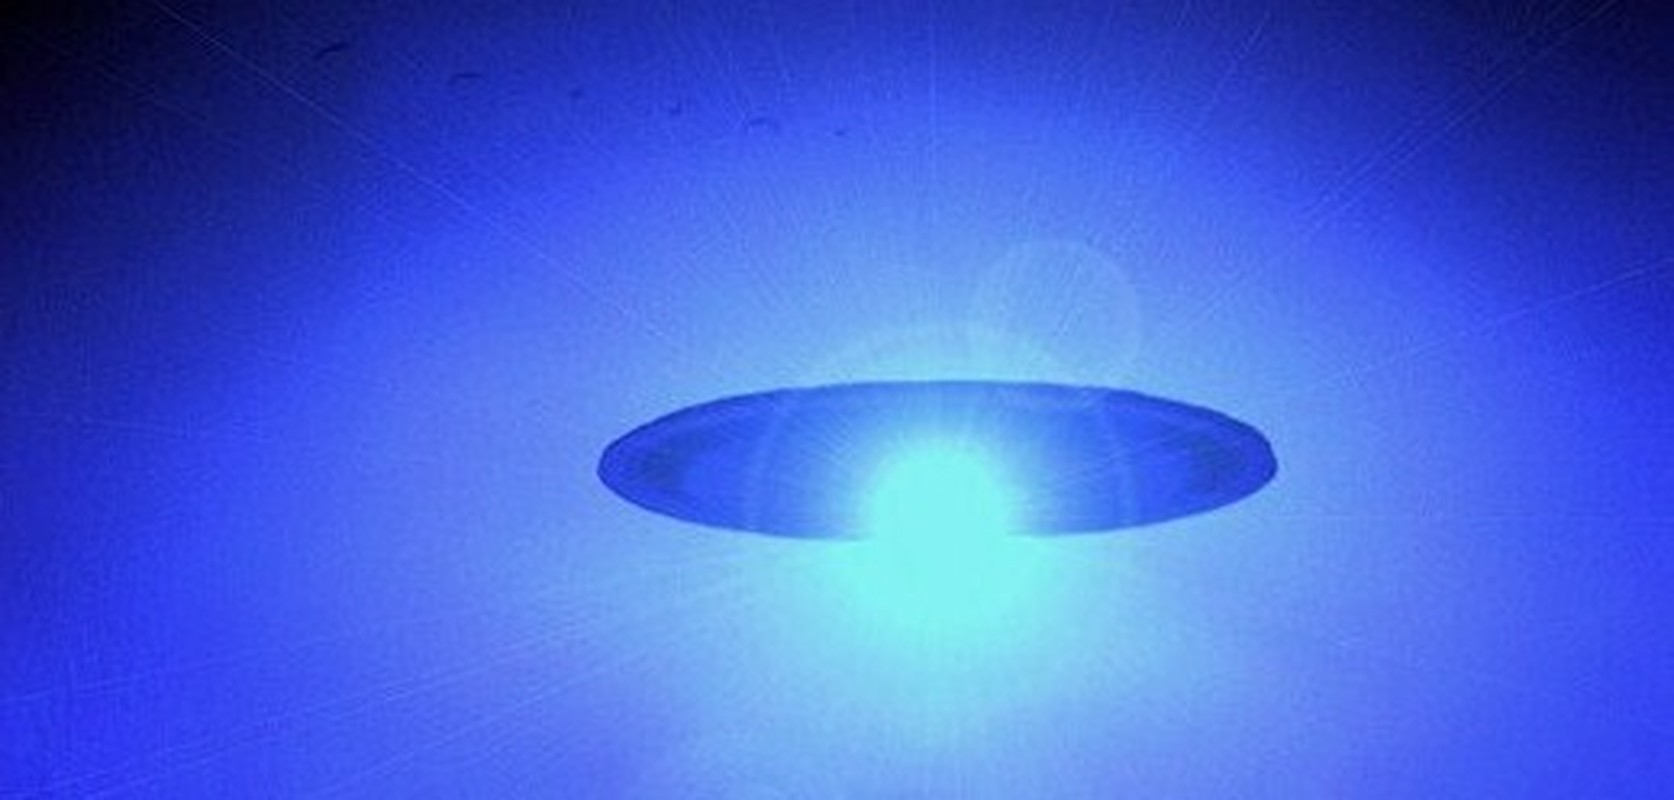 Xon xao UFO gia dang dong co may bay-Hinh-2